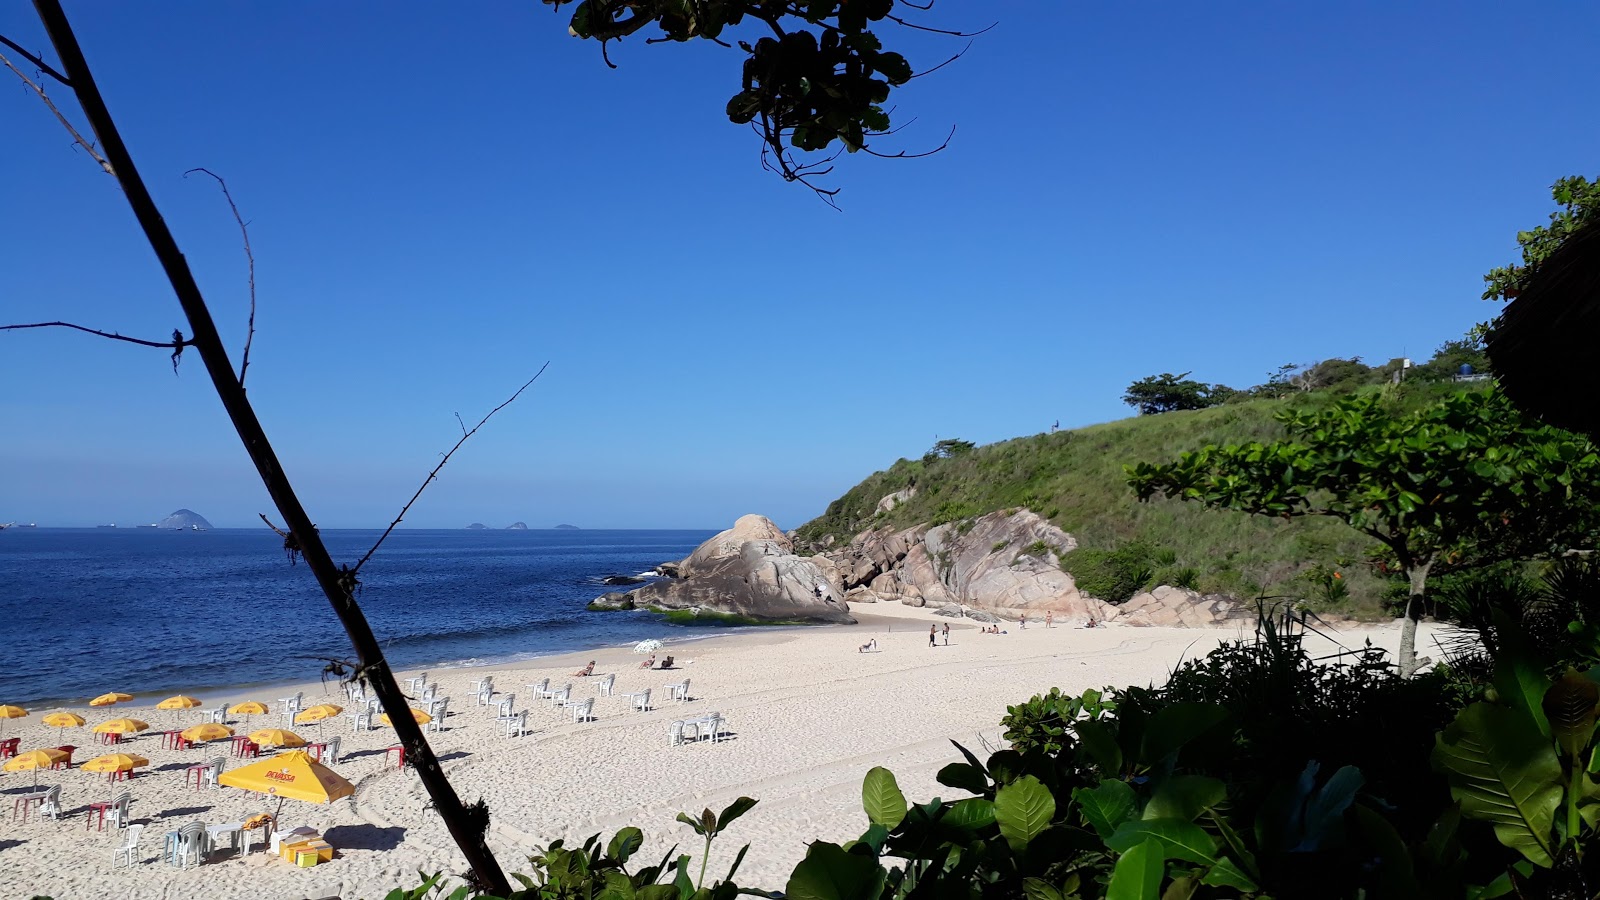 Praia de Camboinhas的照片 - 受到放松专家欢迎的热门地点